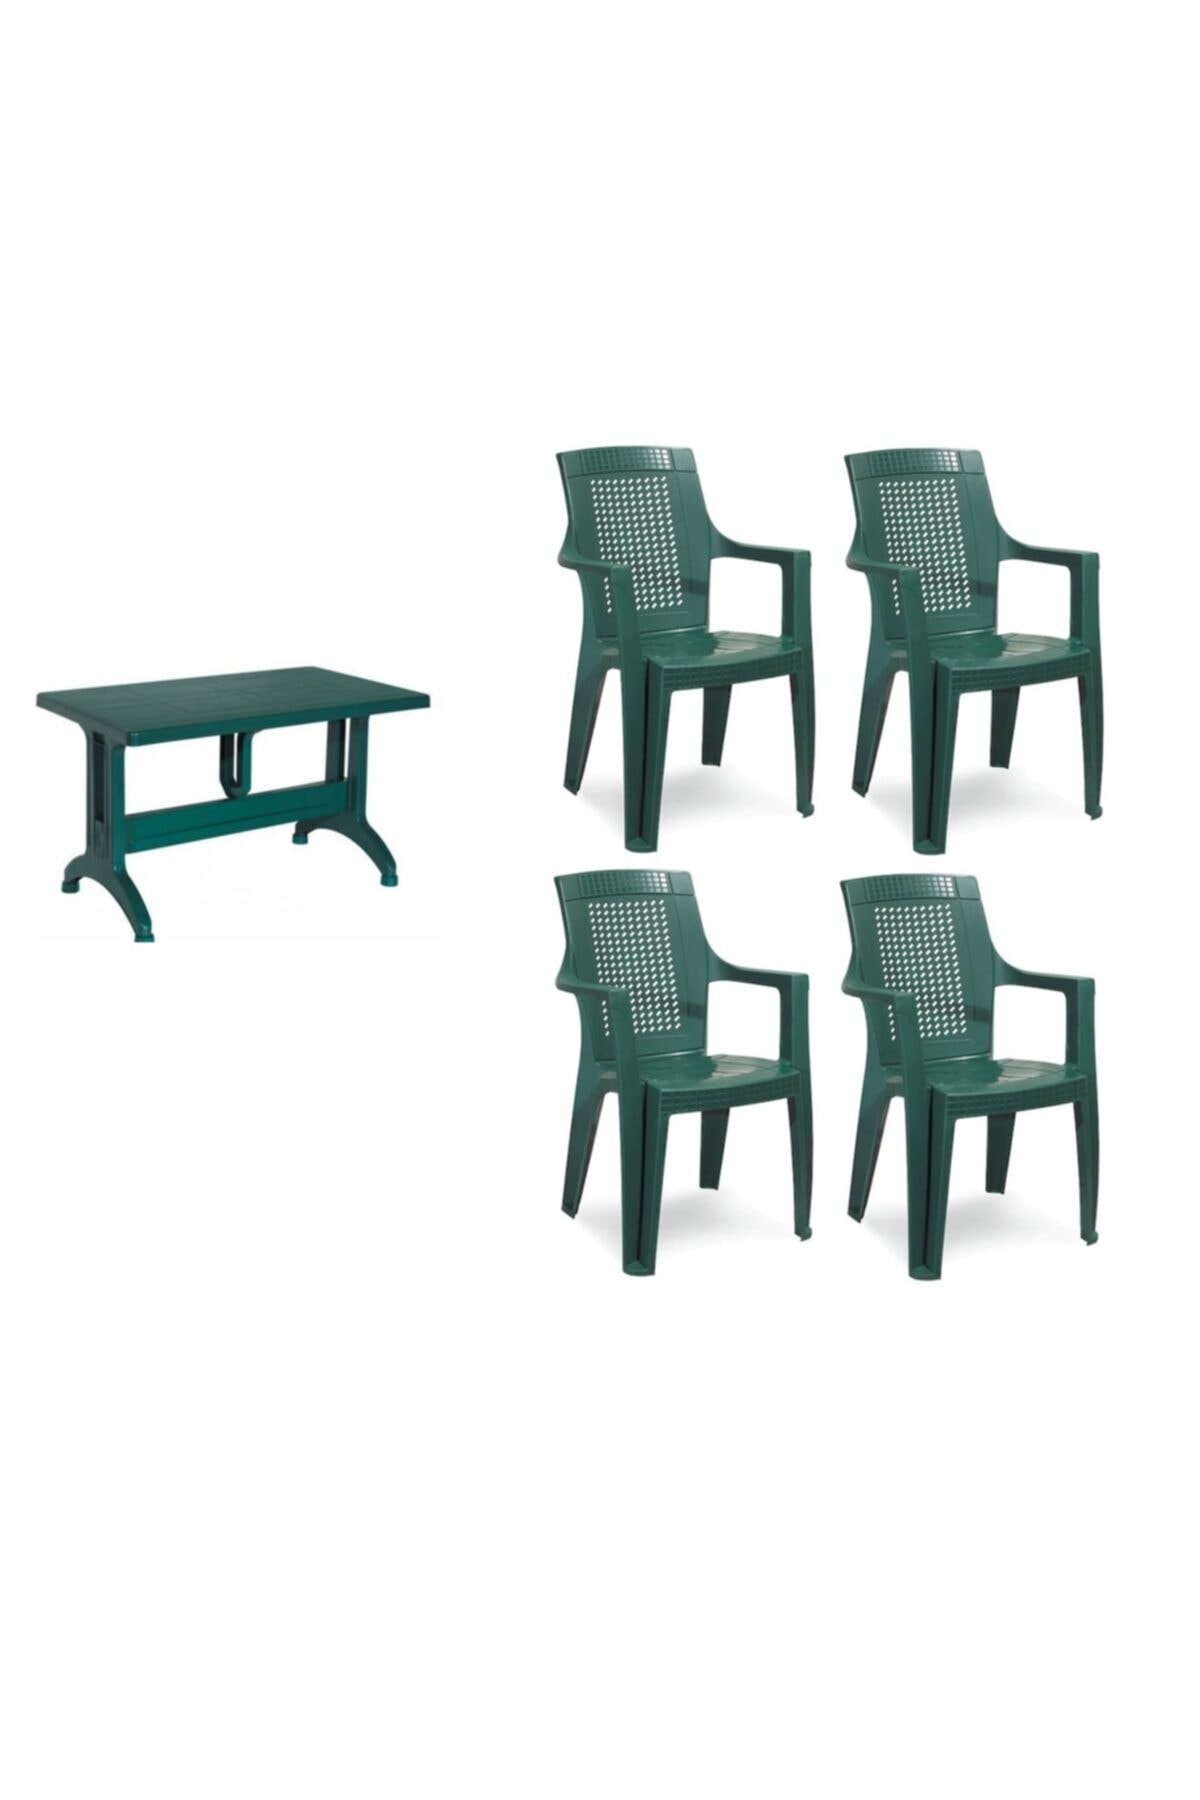 NetBazaars Plastik Sabit Sandalye Masa Takımı 70x120 cm + 4 Adet